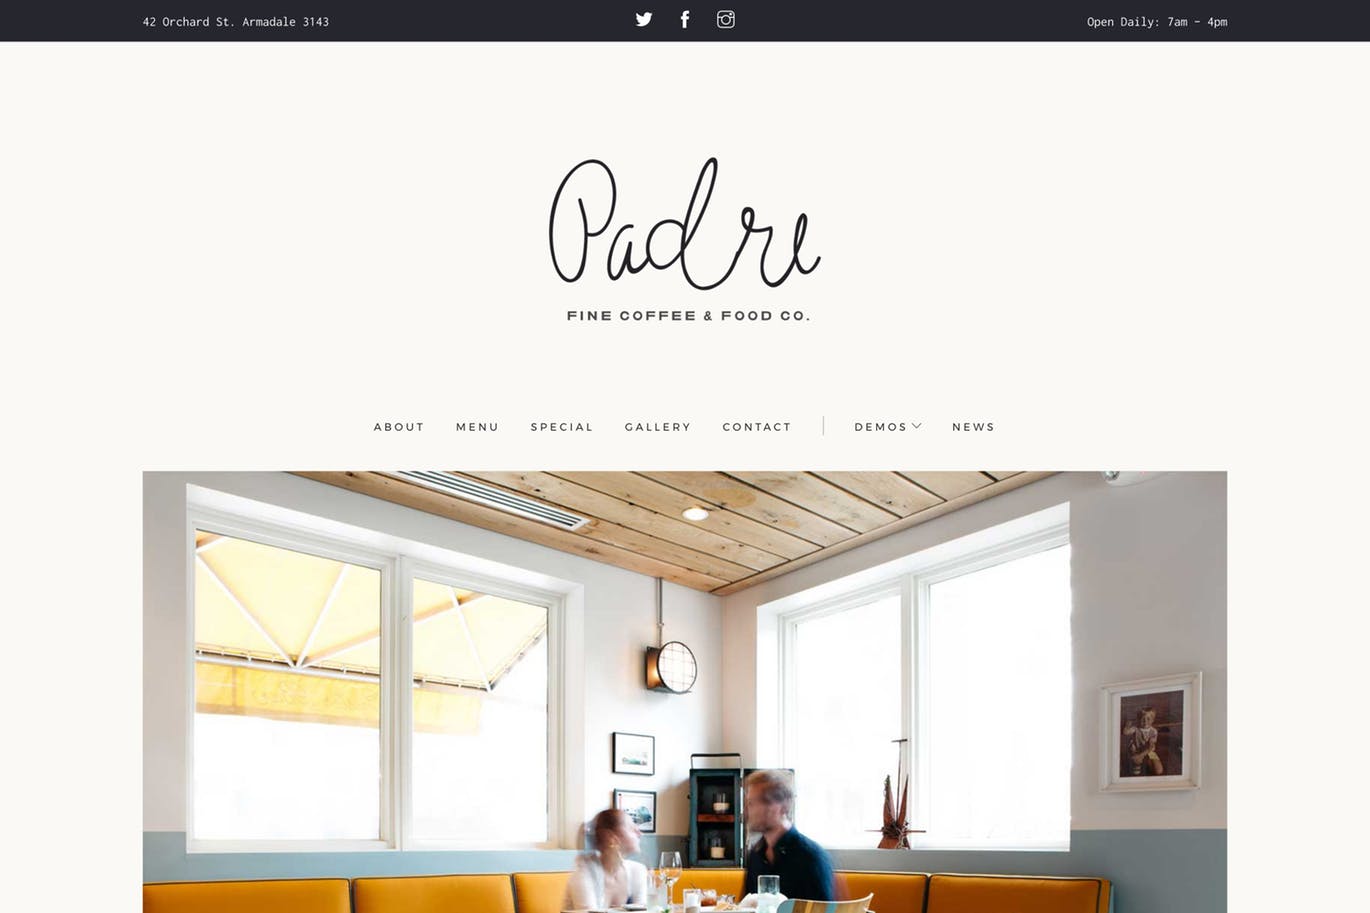 咖啡店/西餐厅官网设计HTML模板第一素材精选 Padre | Cafe & Restaurant HTML Template插图